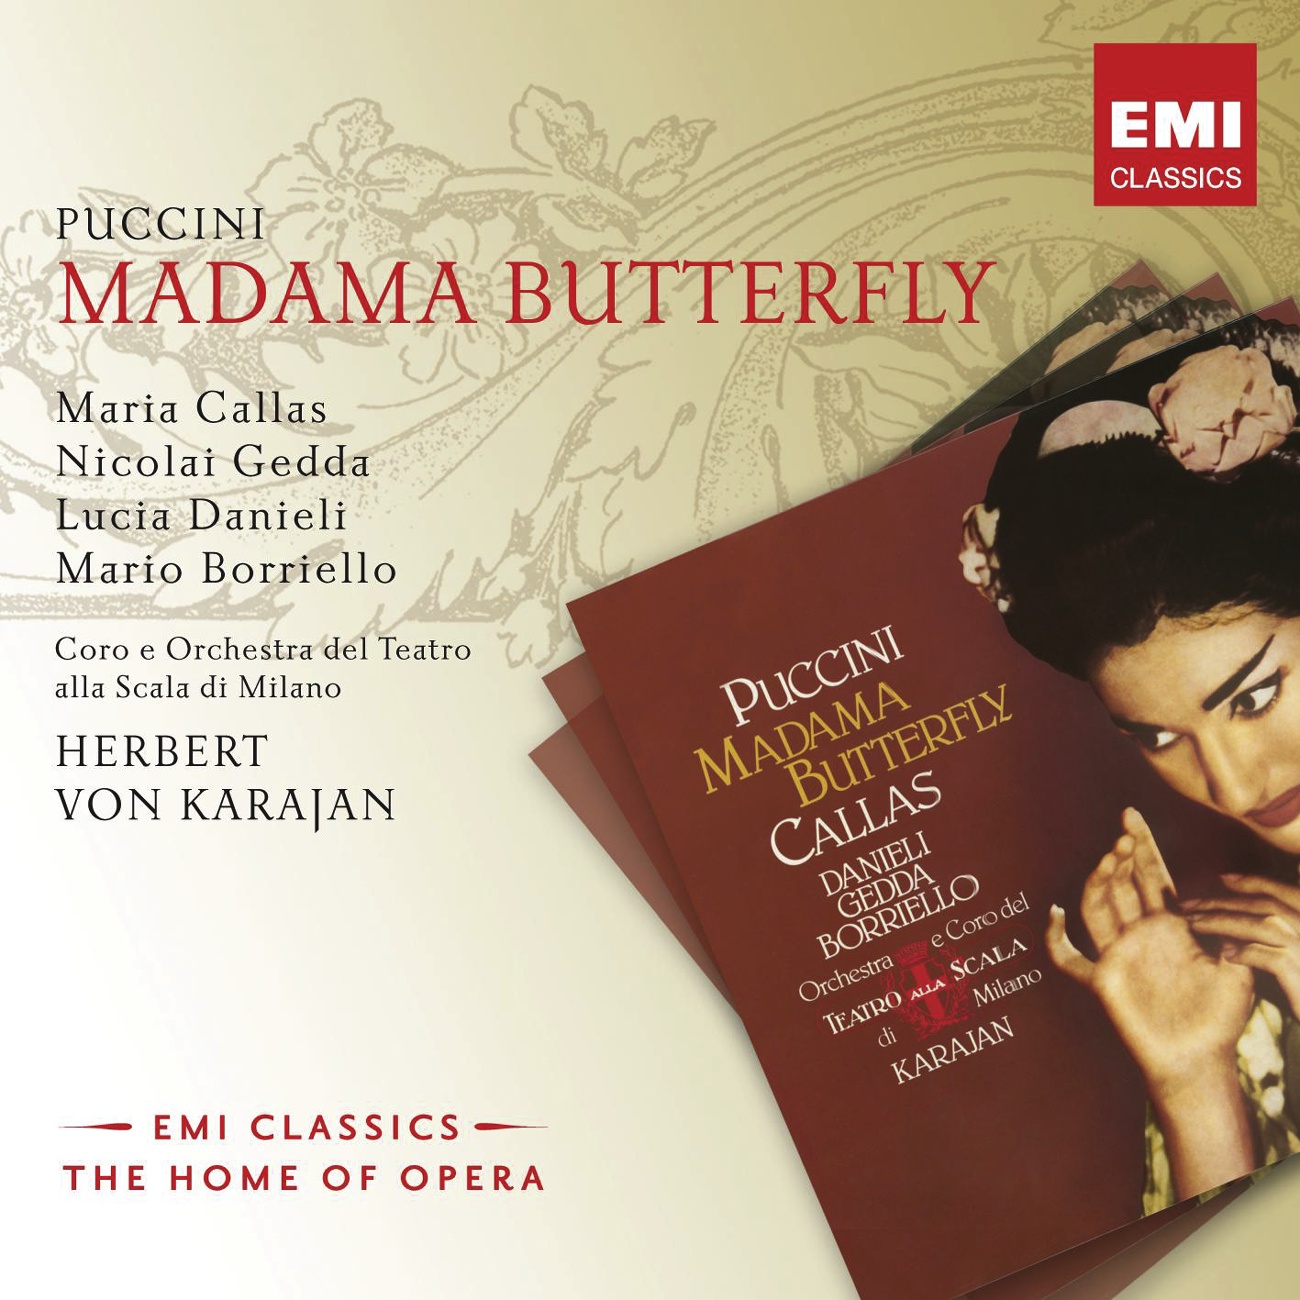 Madama Butterfly (2008 Remastered Version), Act I: Bimba dagli occhi pieni di malia